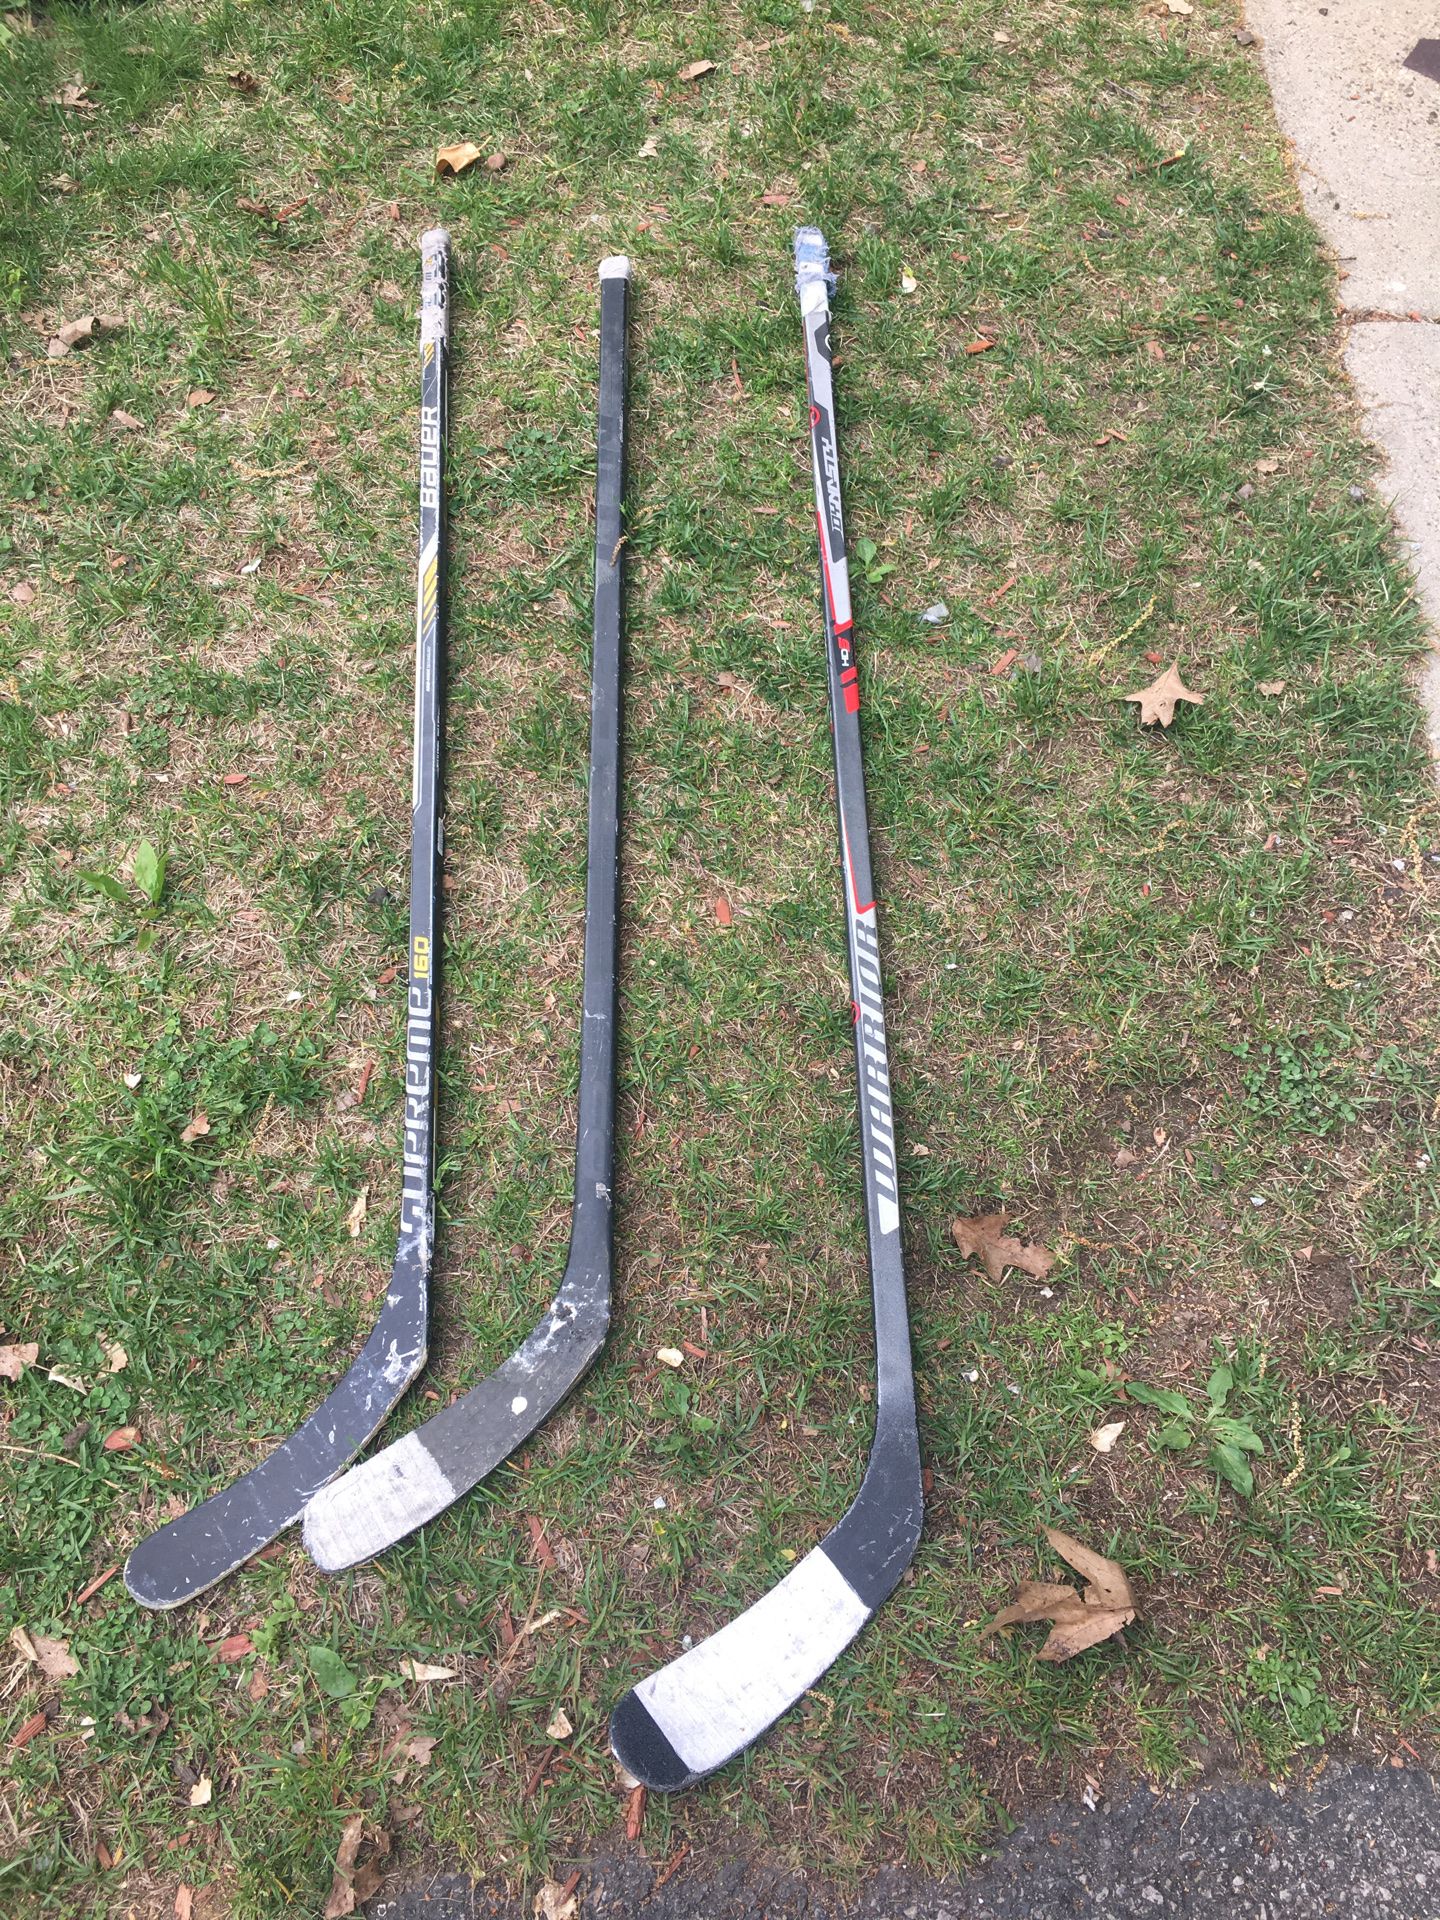 3 hockey sticks